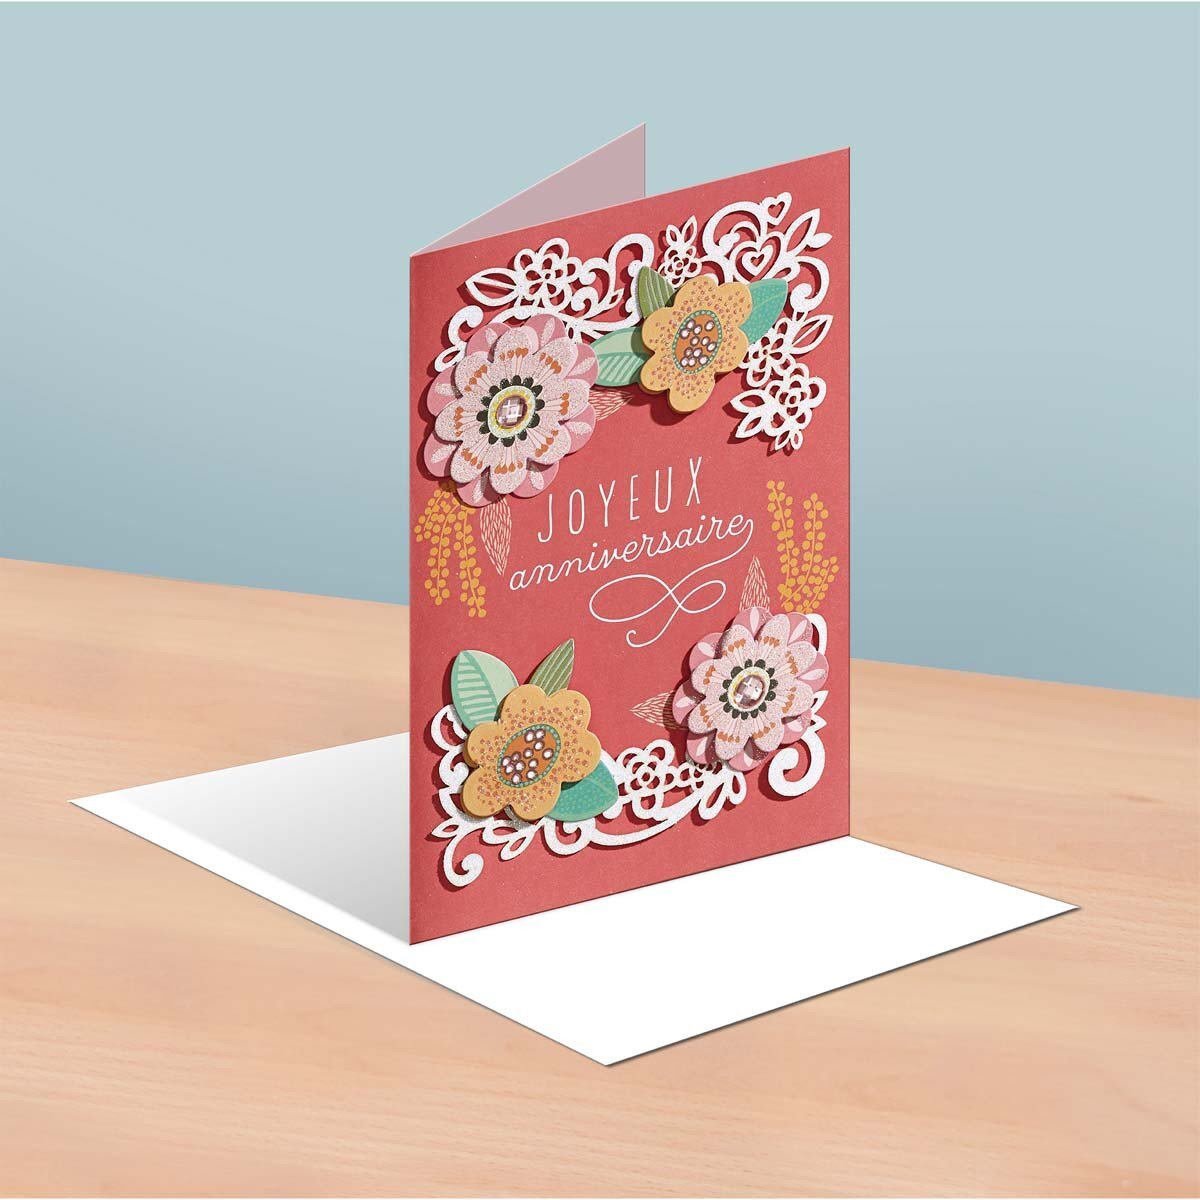 Carte anniversaire femme décor en fleurs reliefées - draeger paris - La  Poste